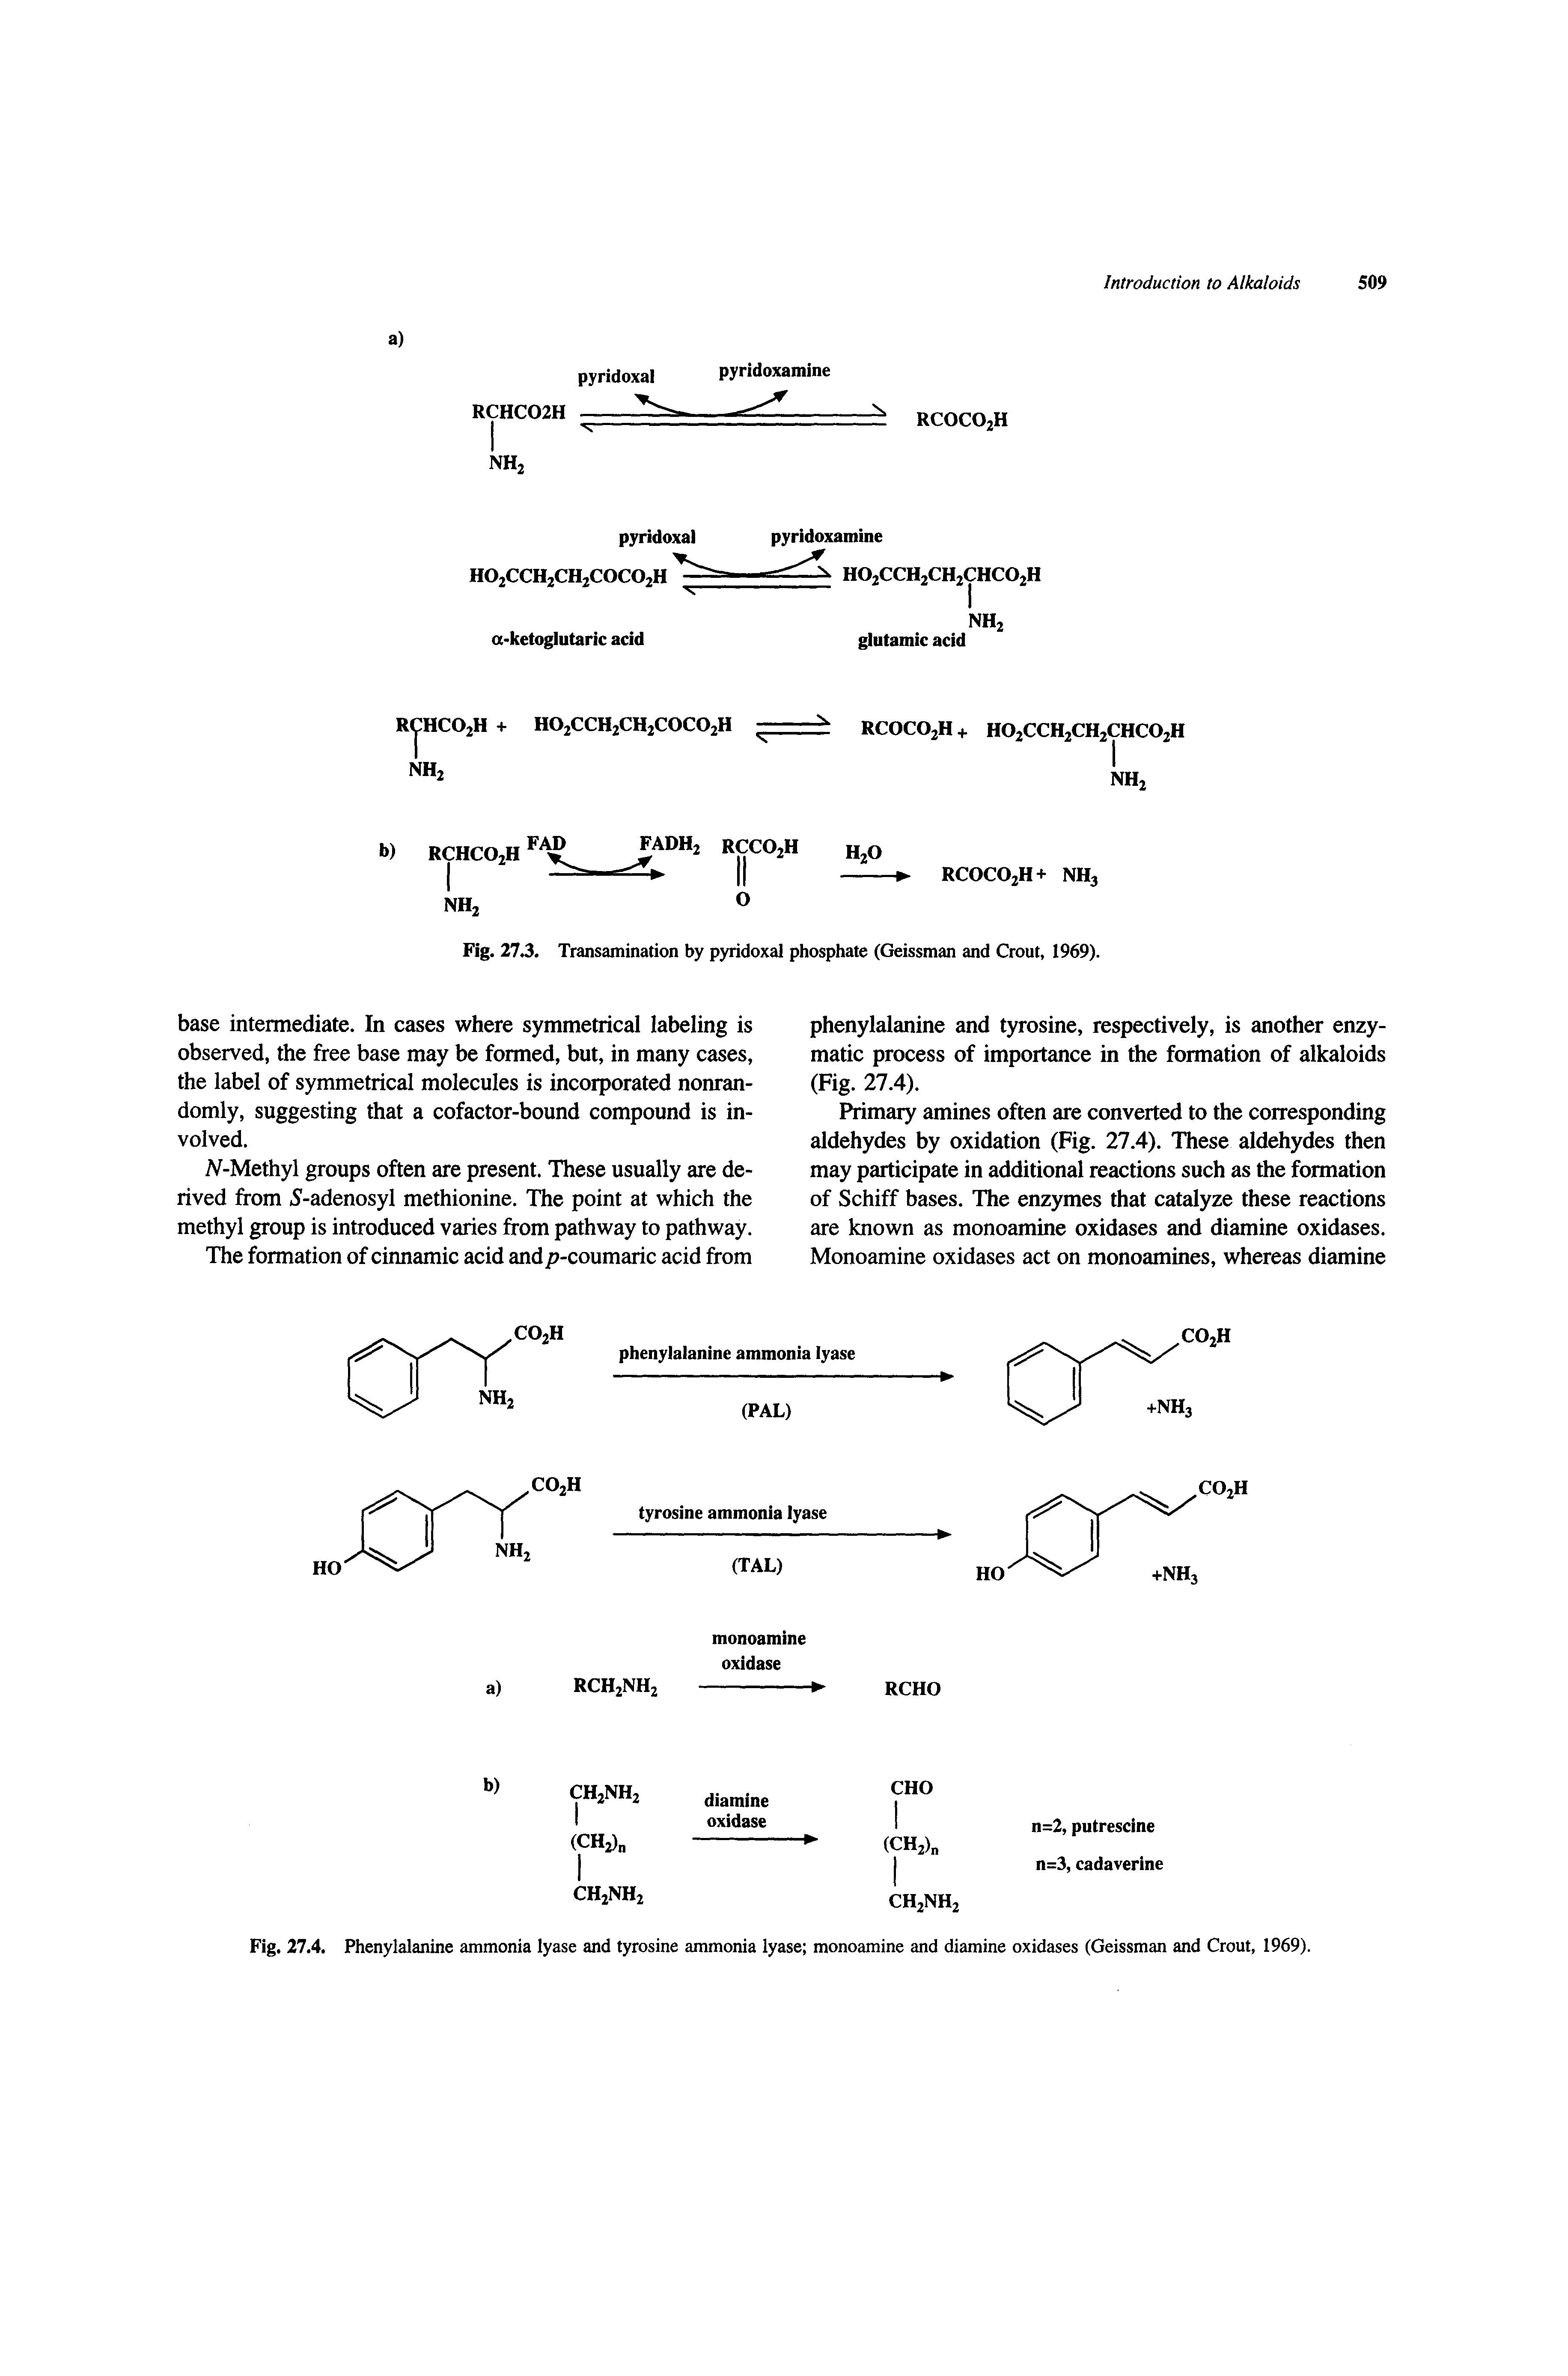 Fig. 27.4. Phenylalanine ammonia lyase and tyrosine ammonia lyase monoamine and diamine oxidases (Geissman and Grout, 1969).